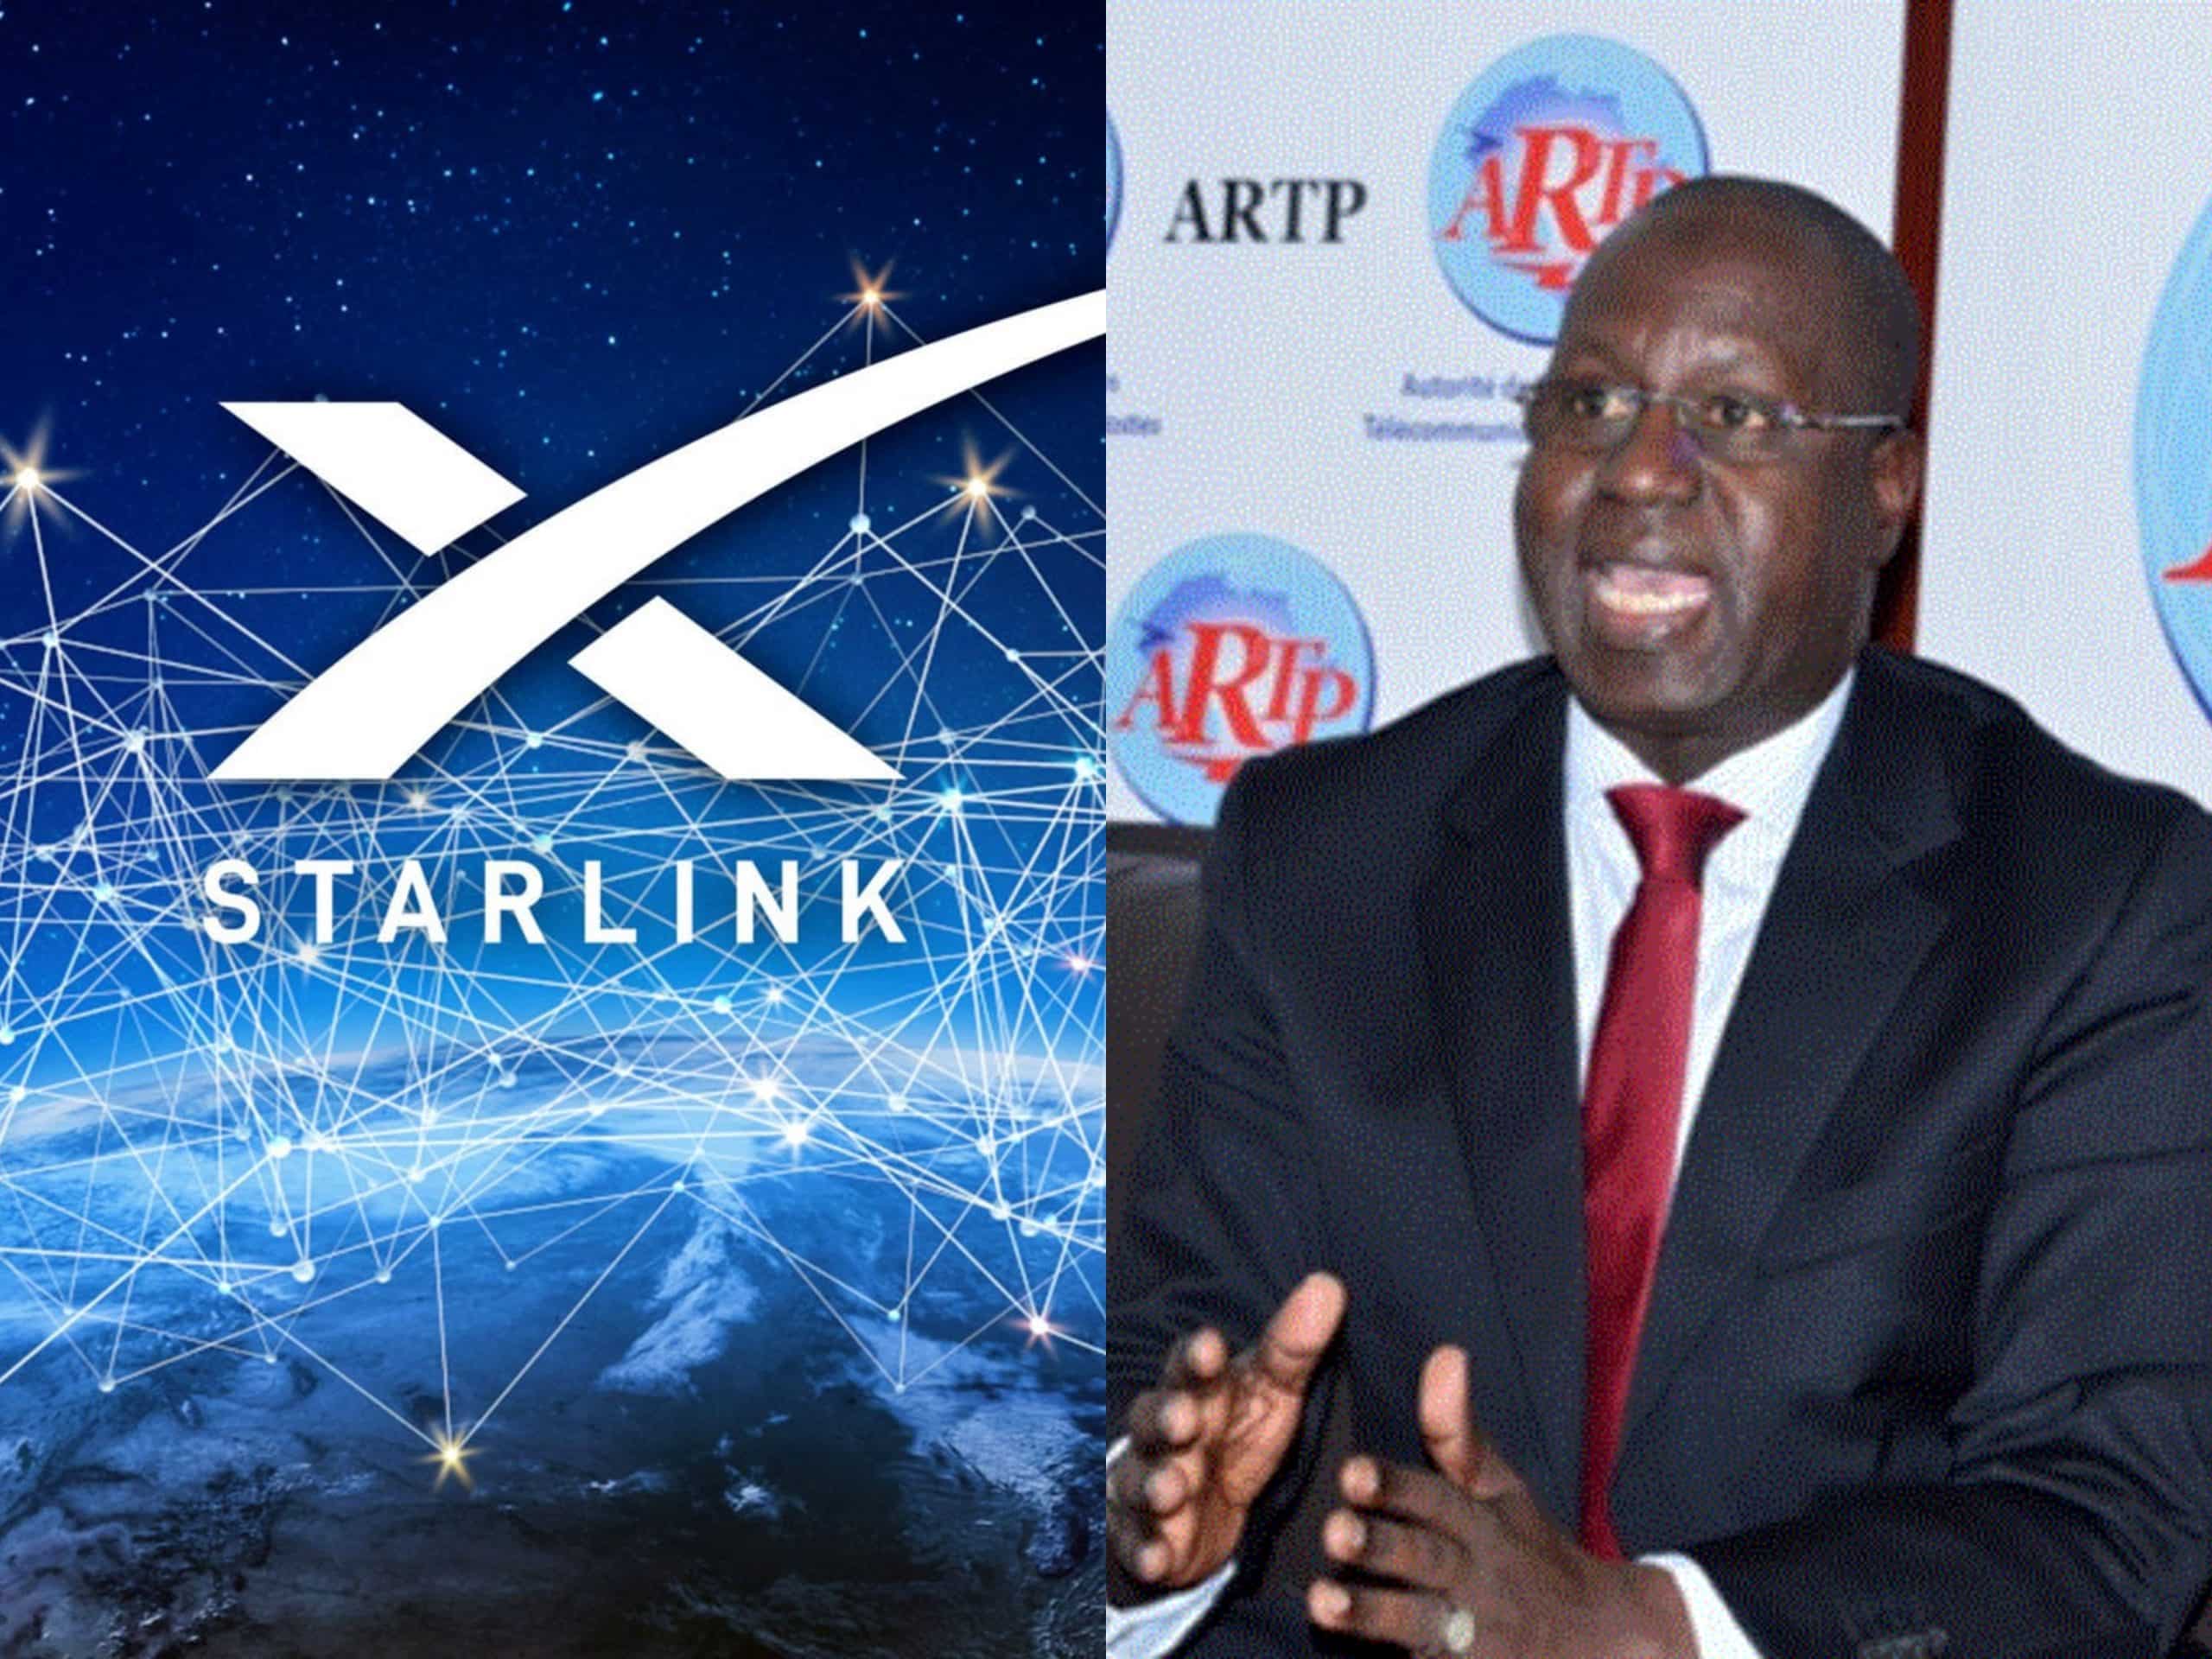 Fourniture illégale d'accès internet : 5 individus de la société STARLINK arrêtés (ARTP) 